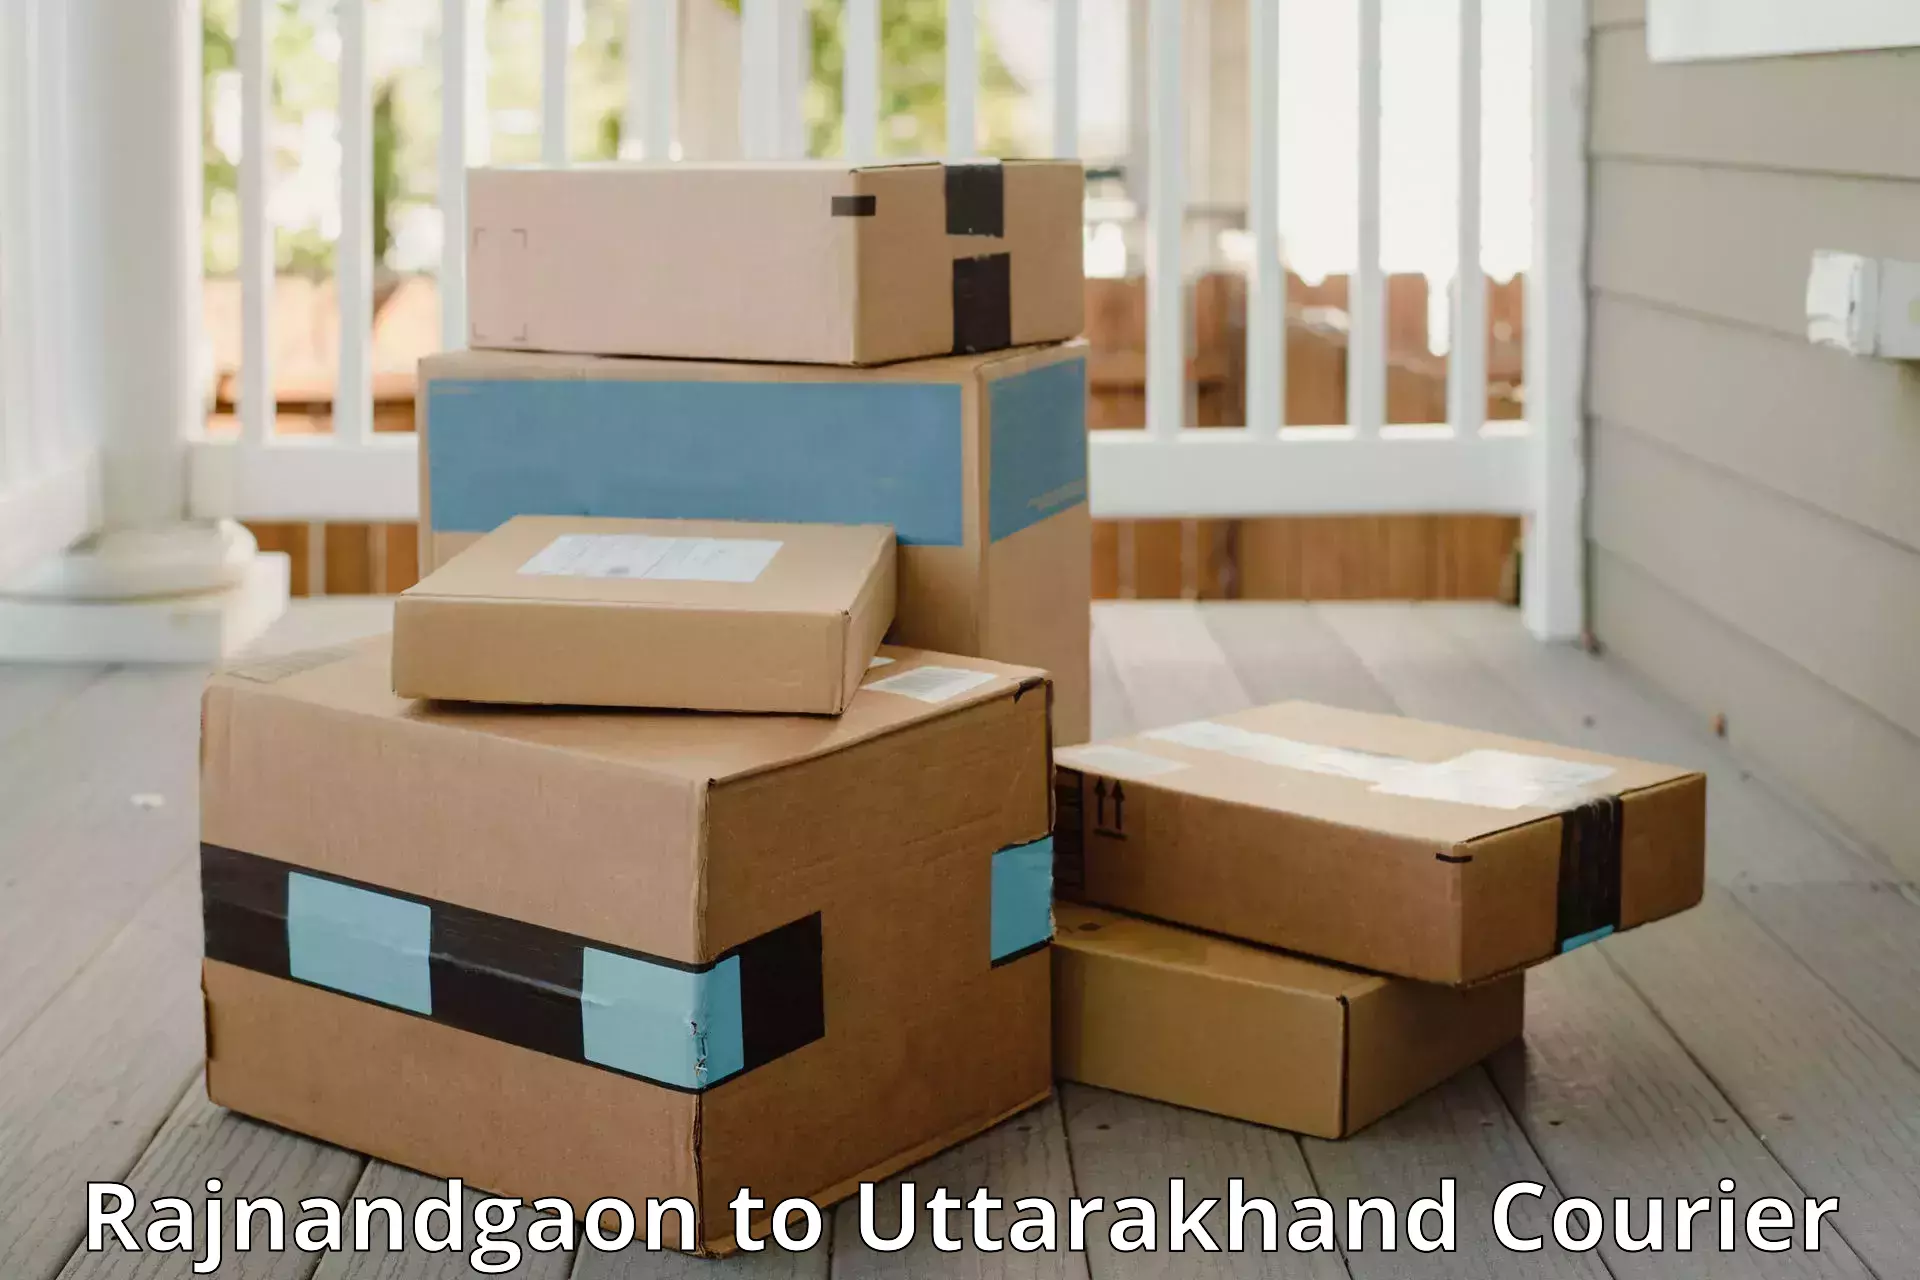 Luggage shipment specialists Rajnandgaon to Chamoli